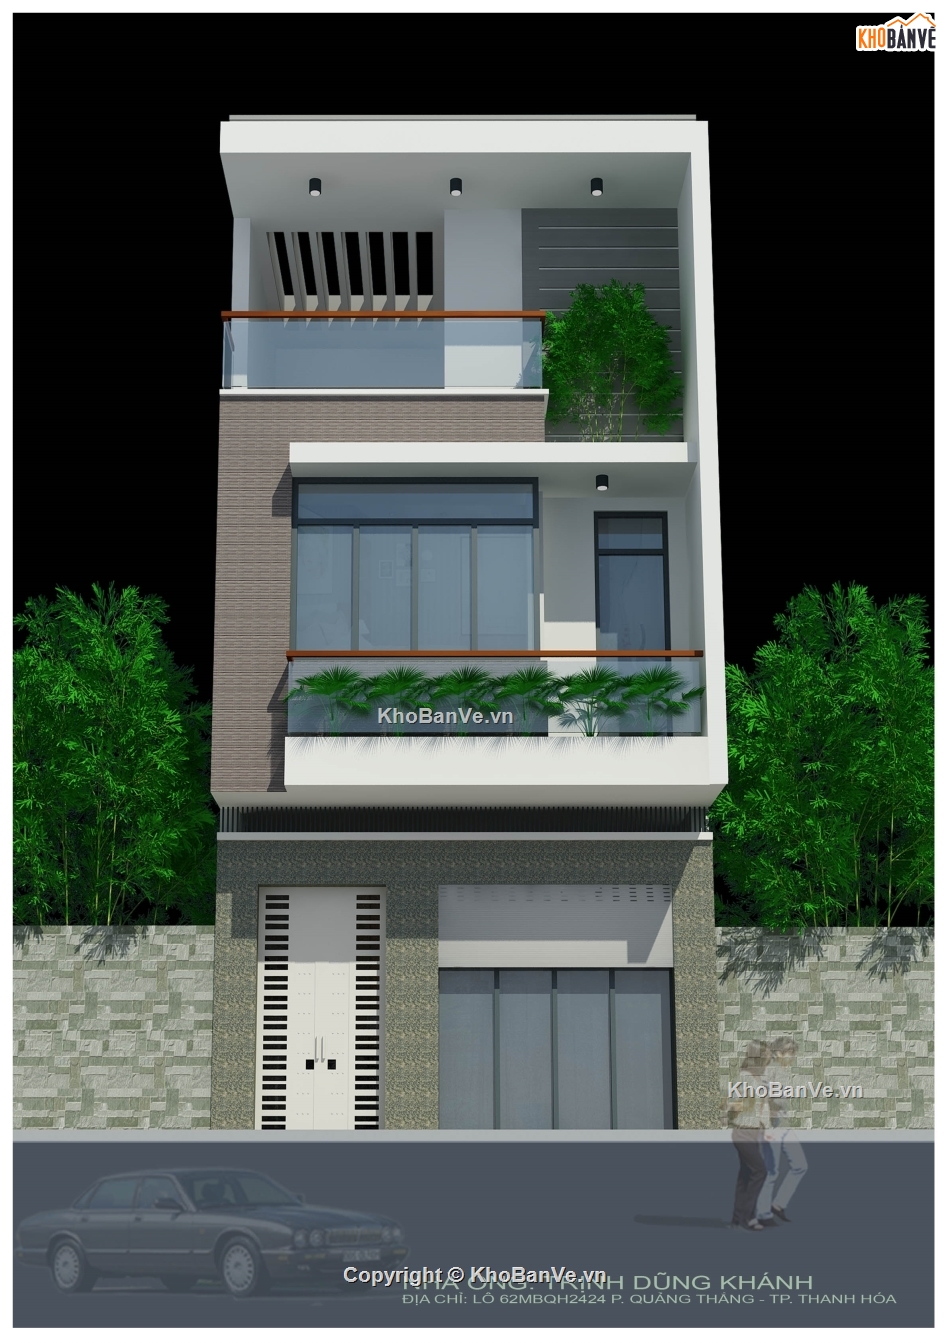 nhà phố 3 tầng,kiến trúc 3 tầng,bản vẽ nhà phố 3 tầng,autocad nhà phố 3 tầng,bản vẽ nhà 3 tầng